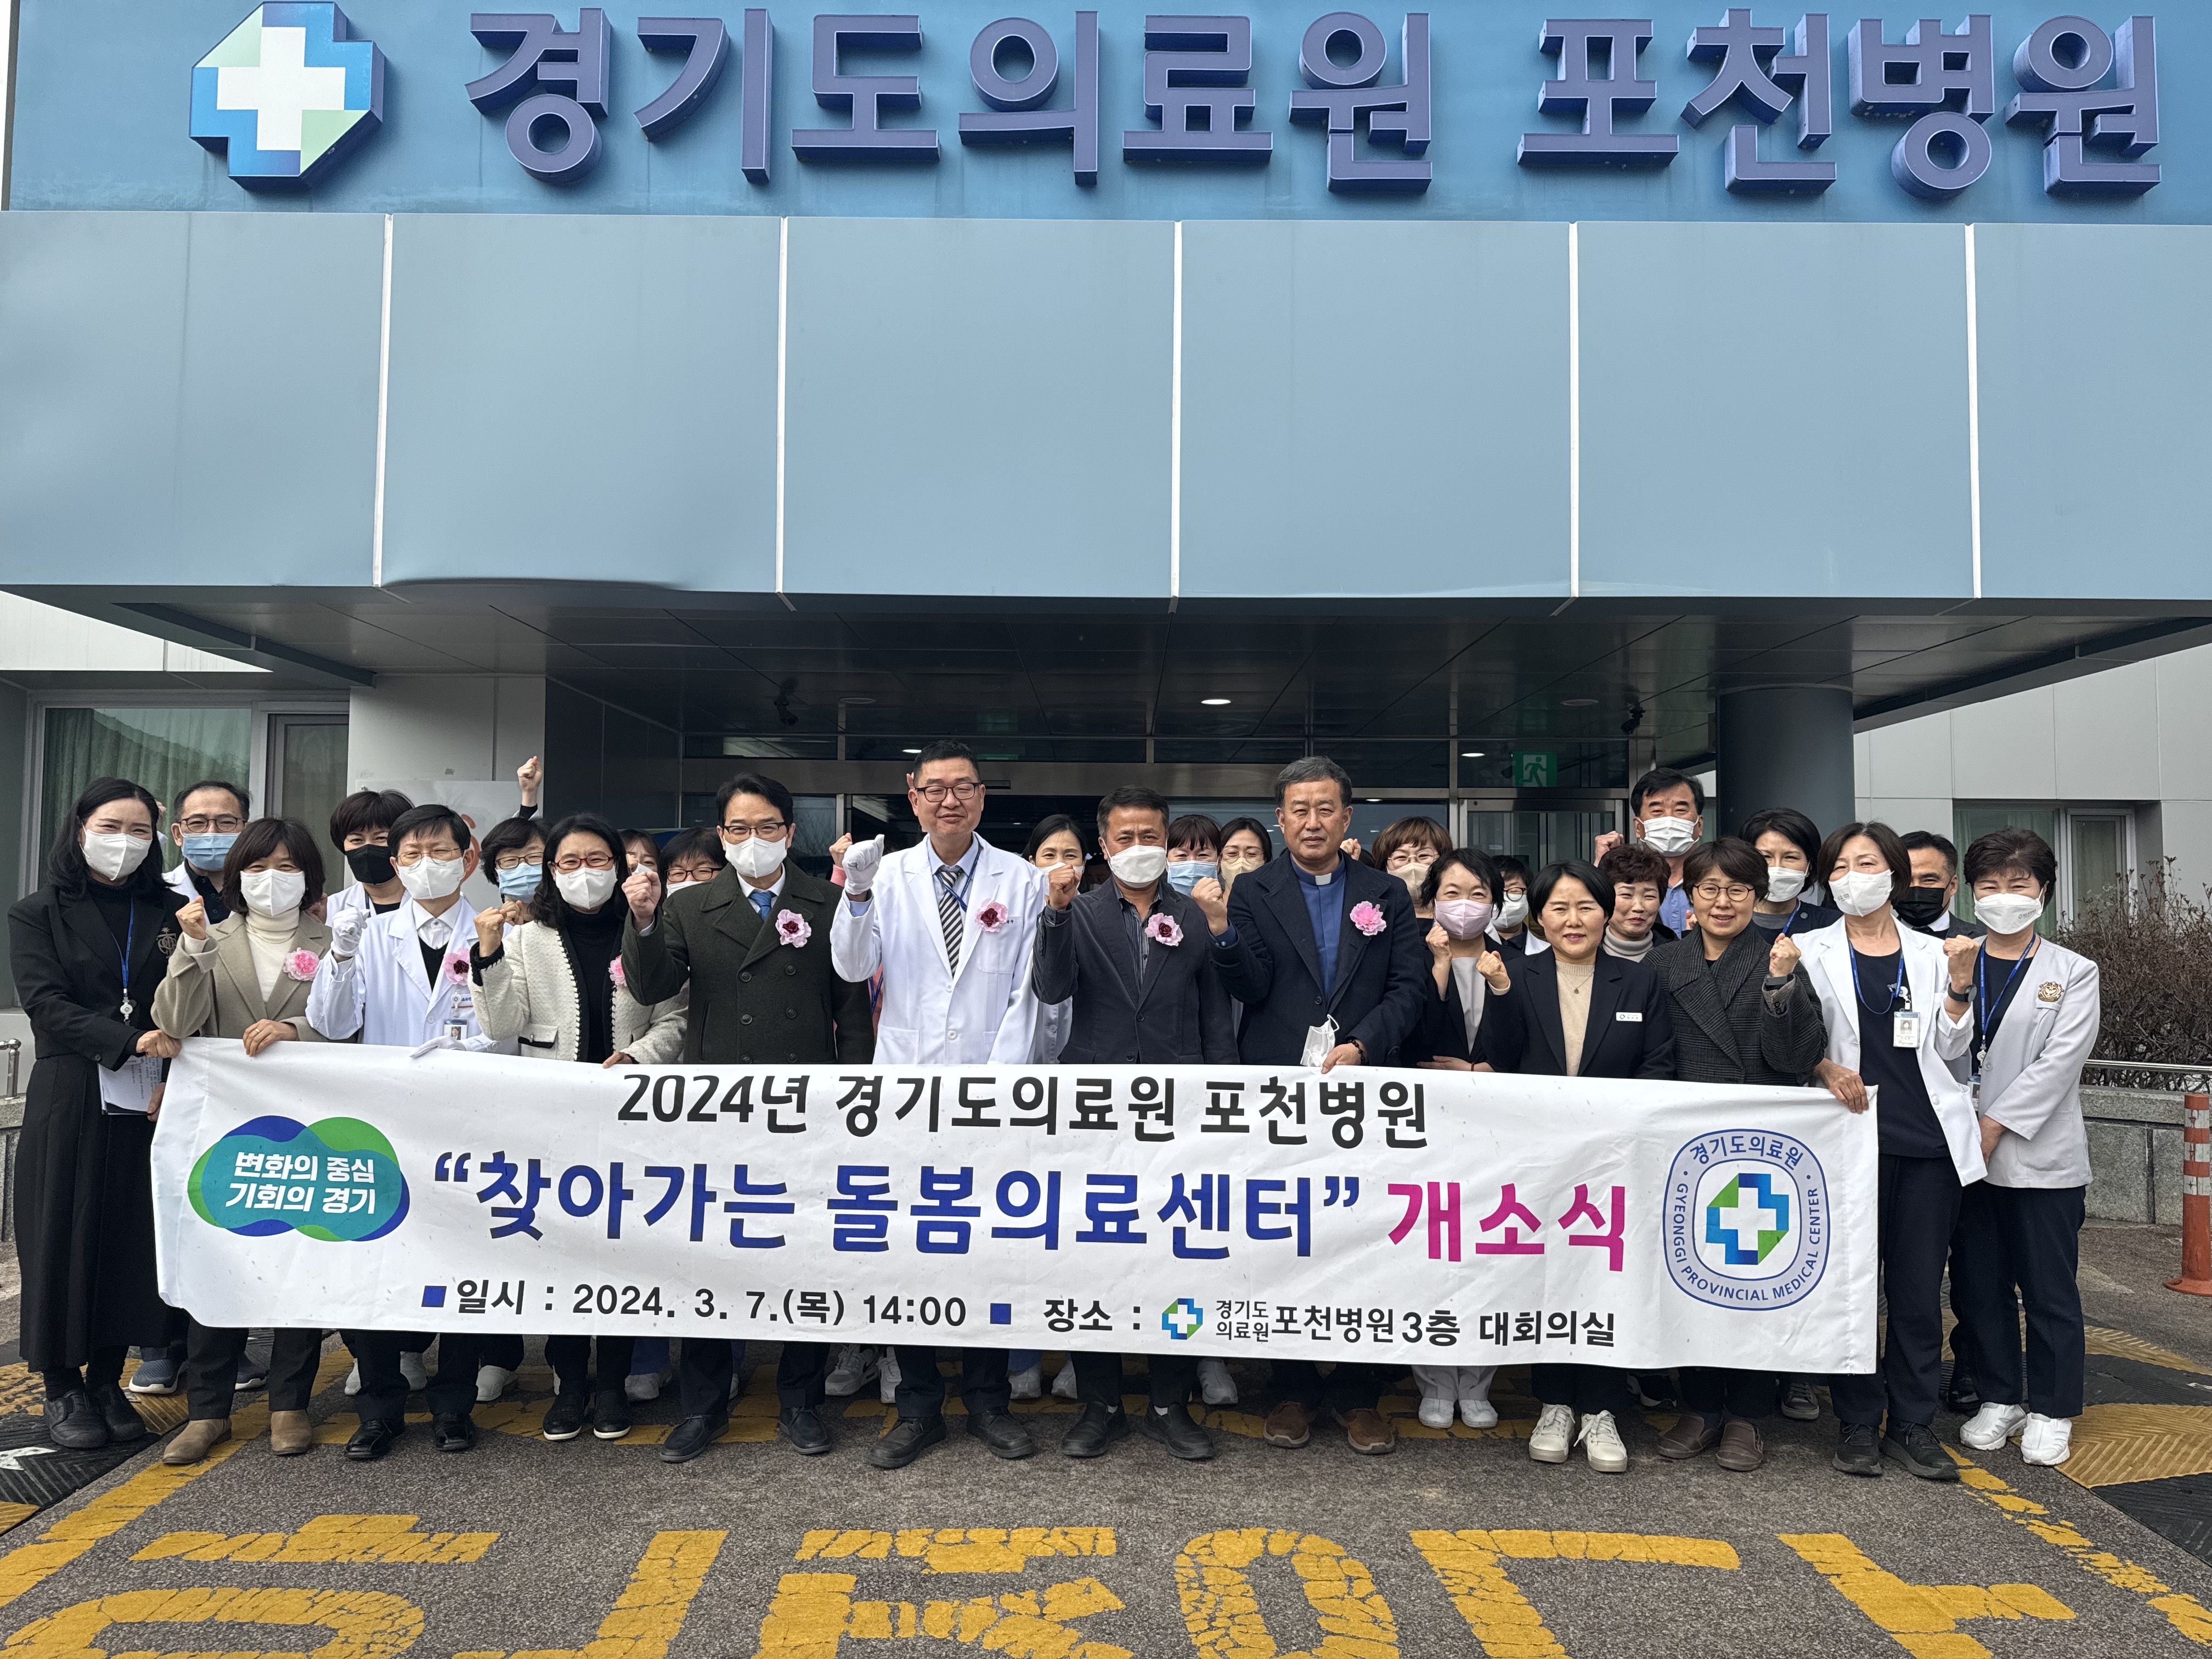 경기도의료원 포천병원, 찾아가는 경기도 돌봄의료센터 개소식 개최